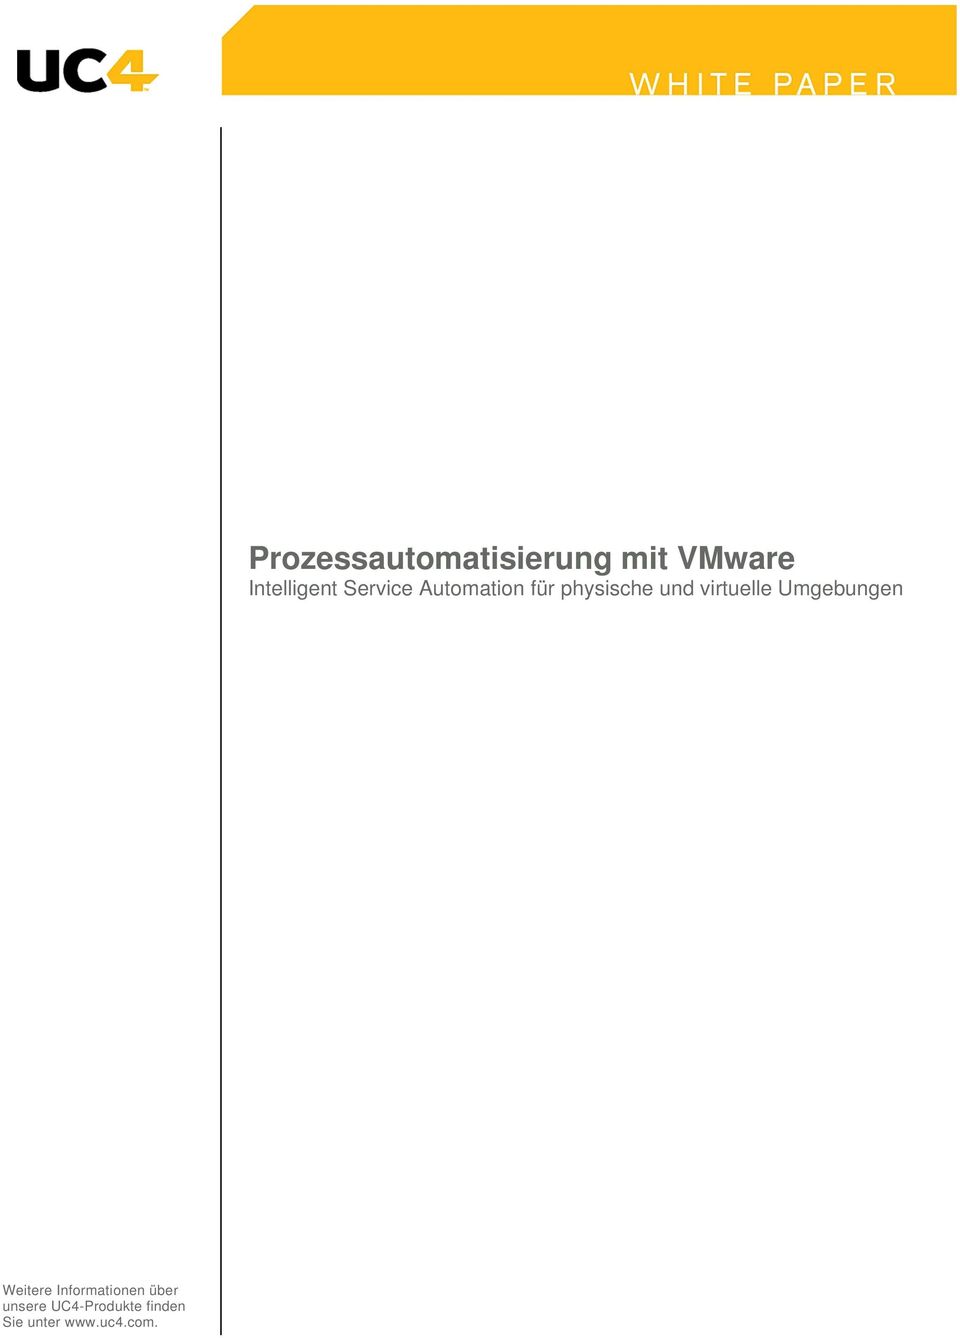 Prozessautomatisierung mit VMware